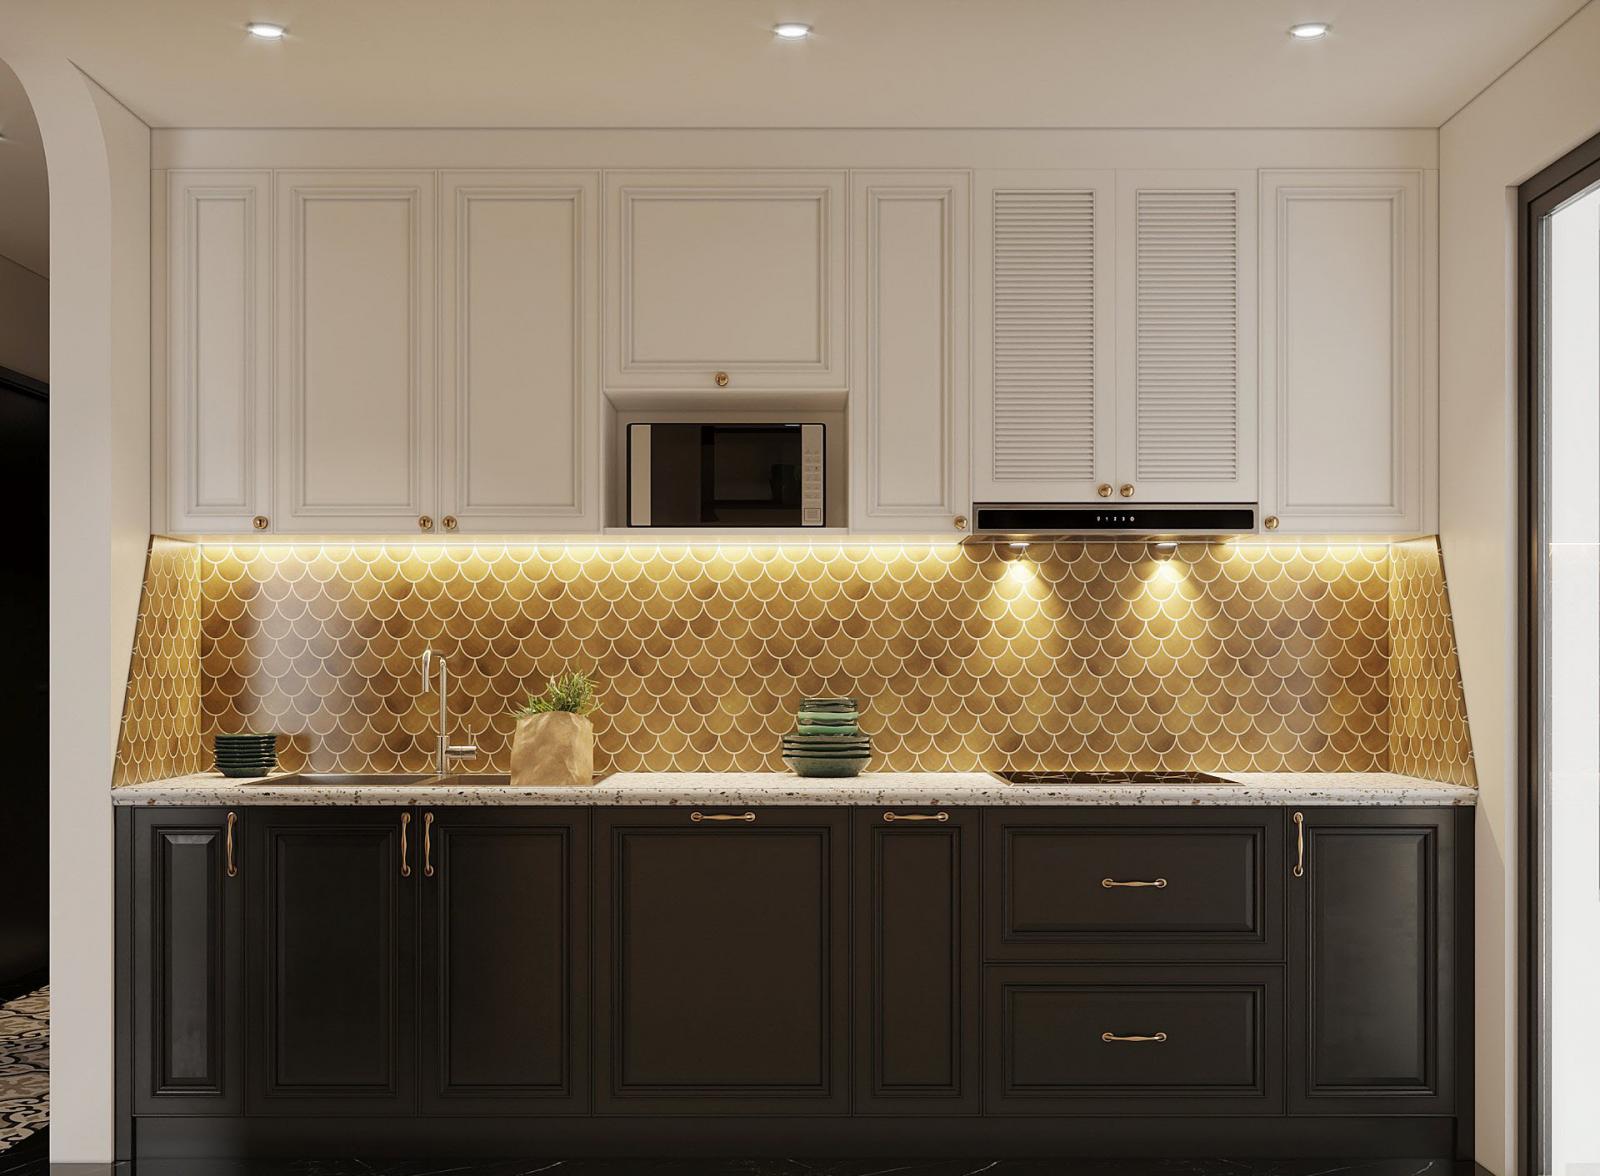 Tường chắn bếp ốp gạch vảy cá màu vàng đồng nổi bật và hài hòa với hệ tủ bếp trên màu trắng, tủ bếp dưới màu đen tuyền cá tính.